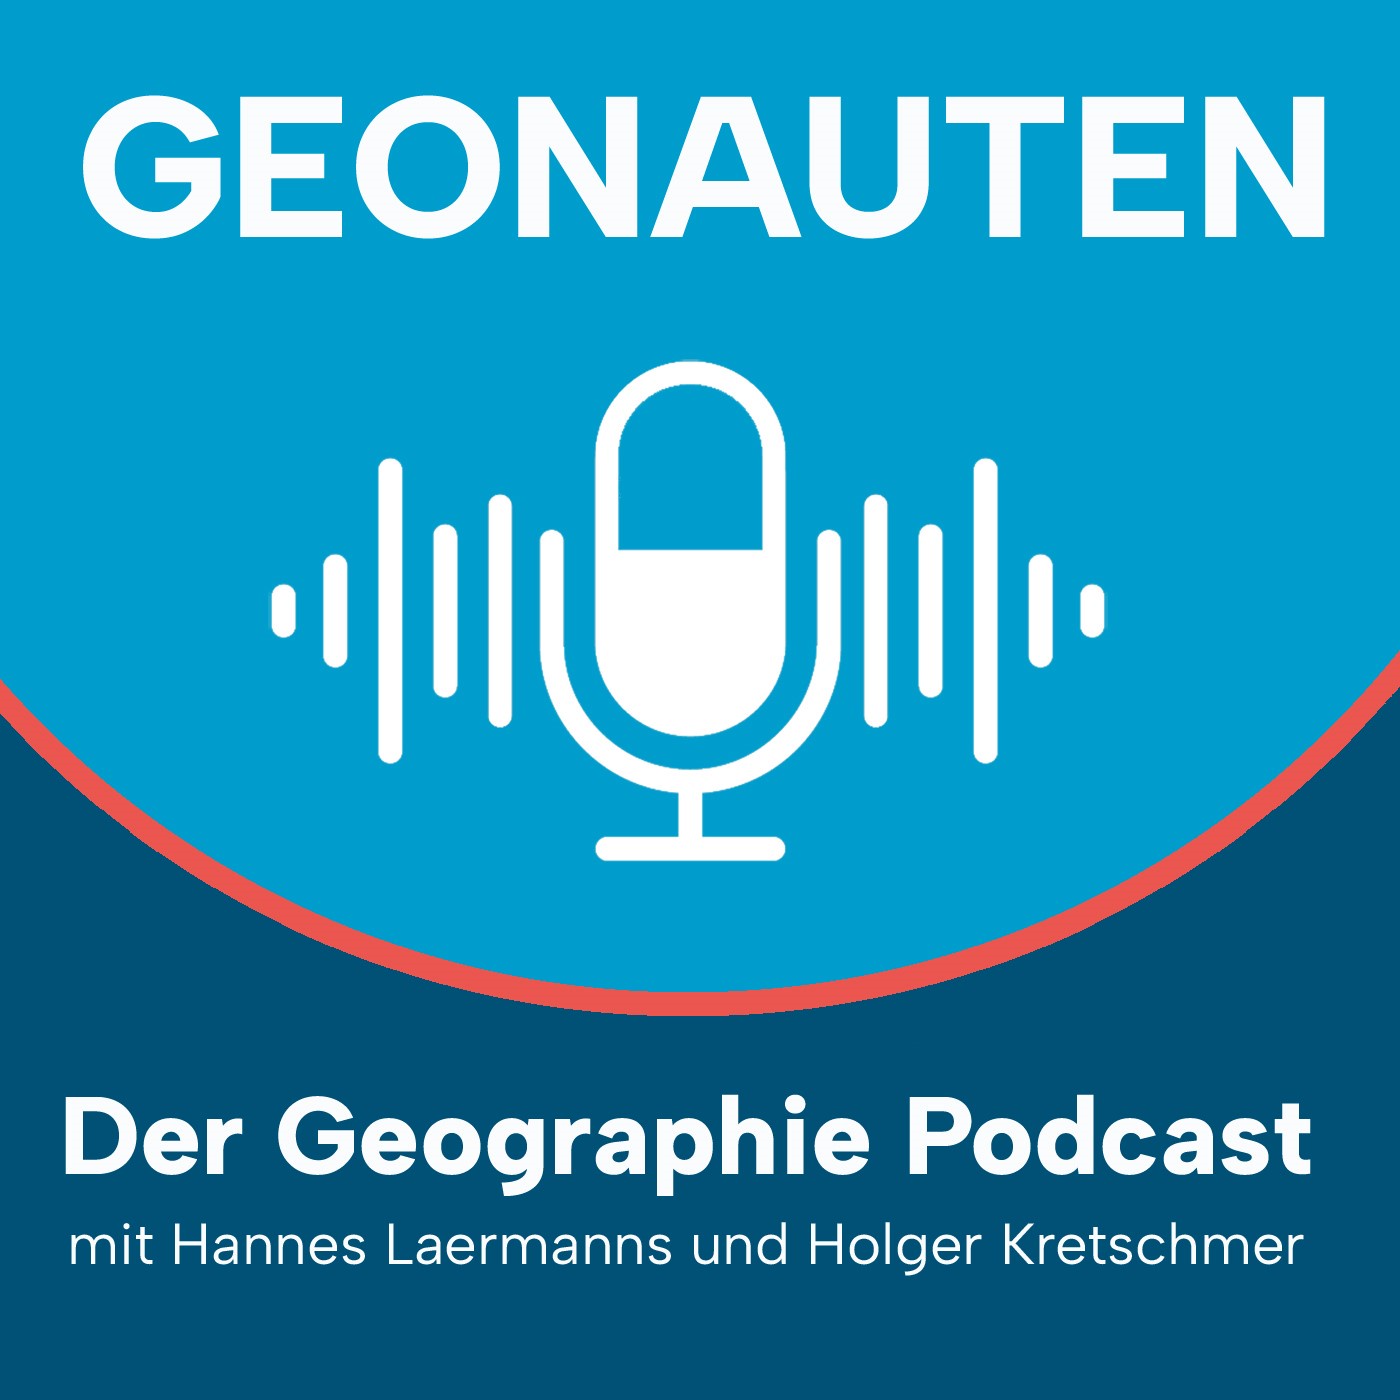 Geonauten Basics #5 – On Air